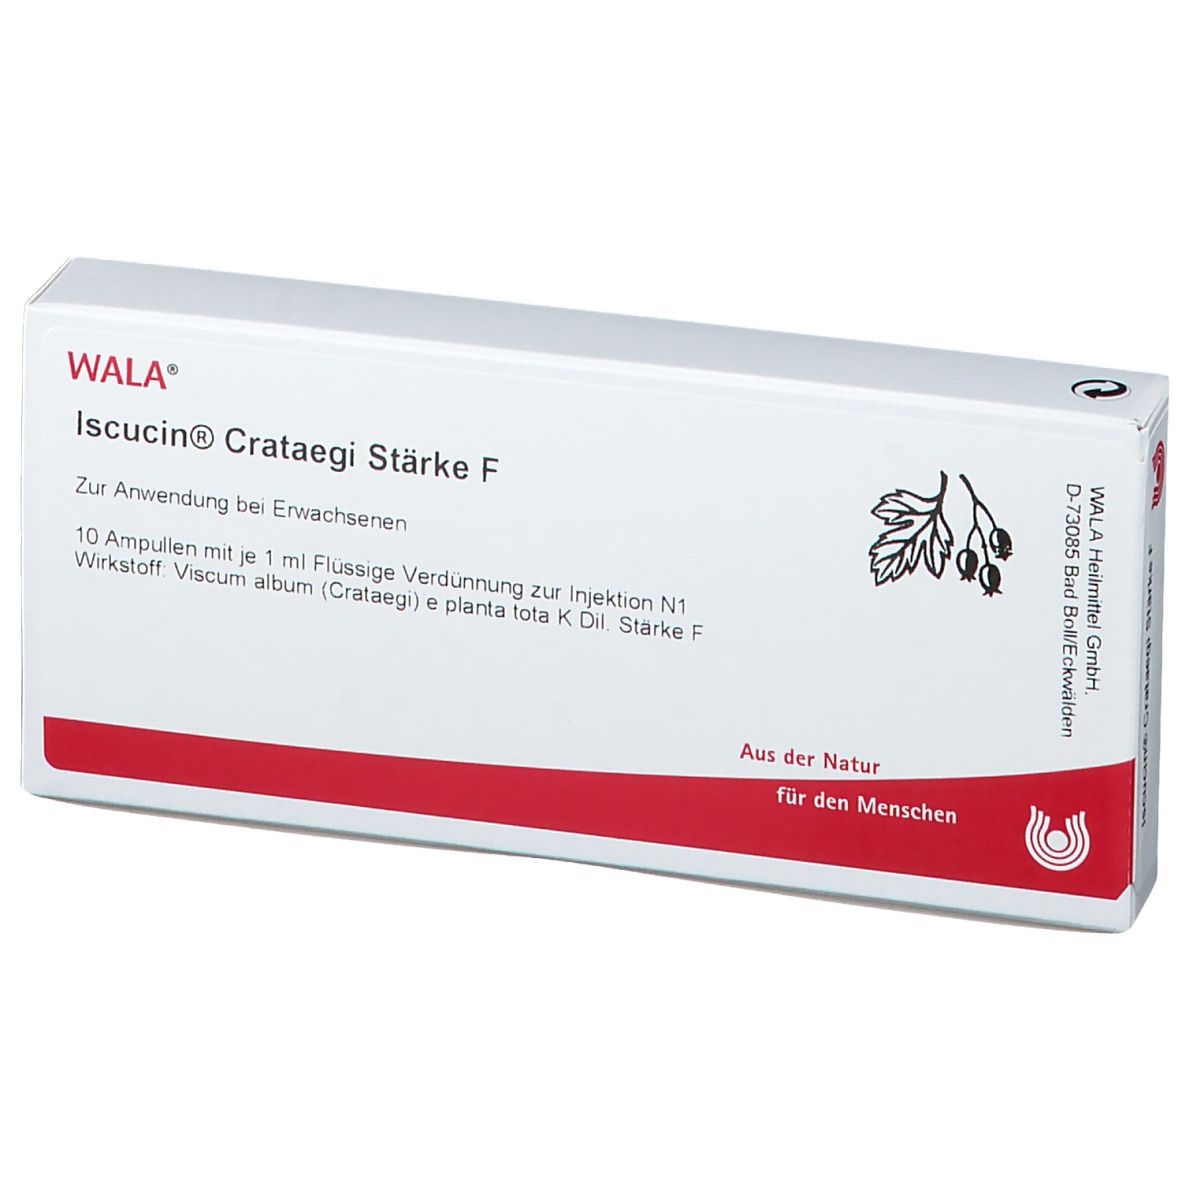 WALA® Iscucin Crataegi Staerke F Amp.